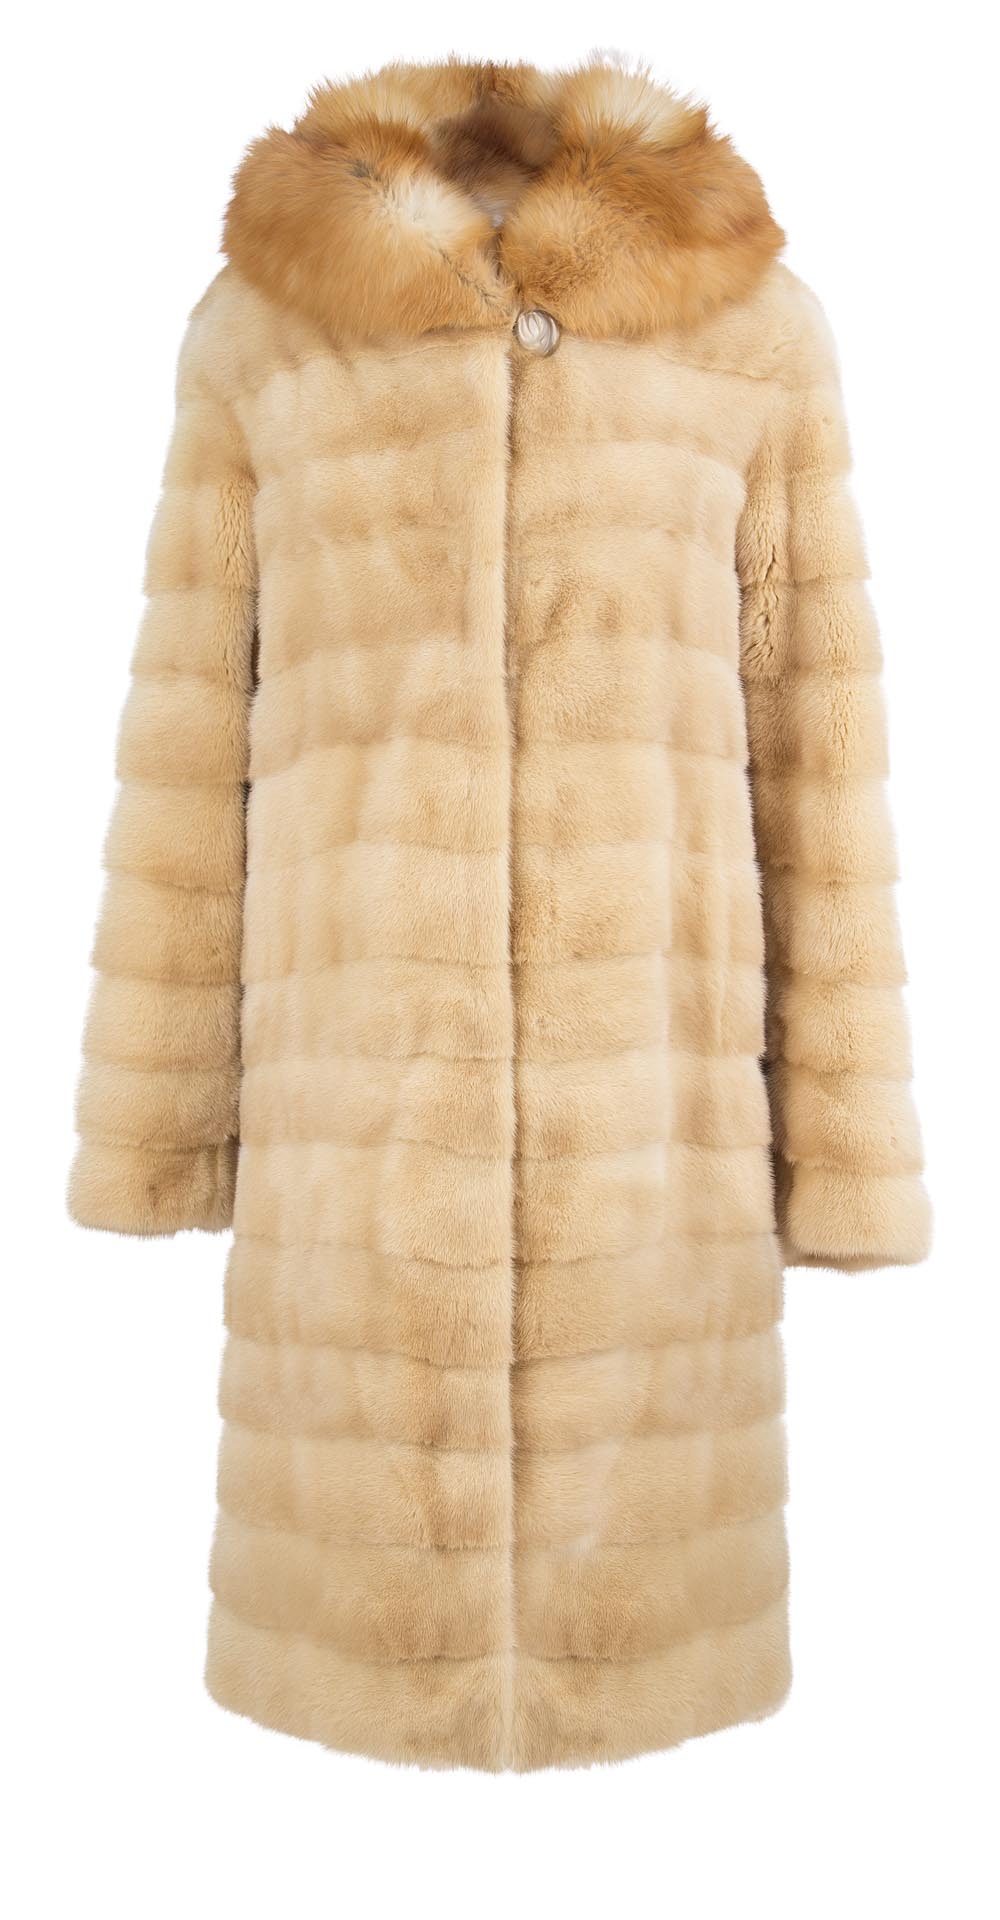 Пальто из меха норки, цвет: Паломино, отделка Лиса - купить за 169400 в магазине - Гипермаркет меха